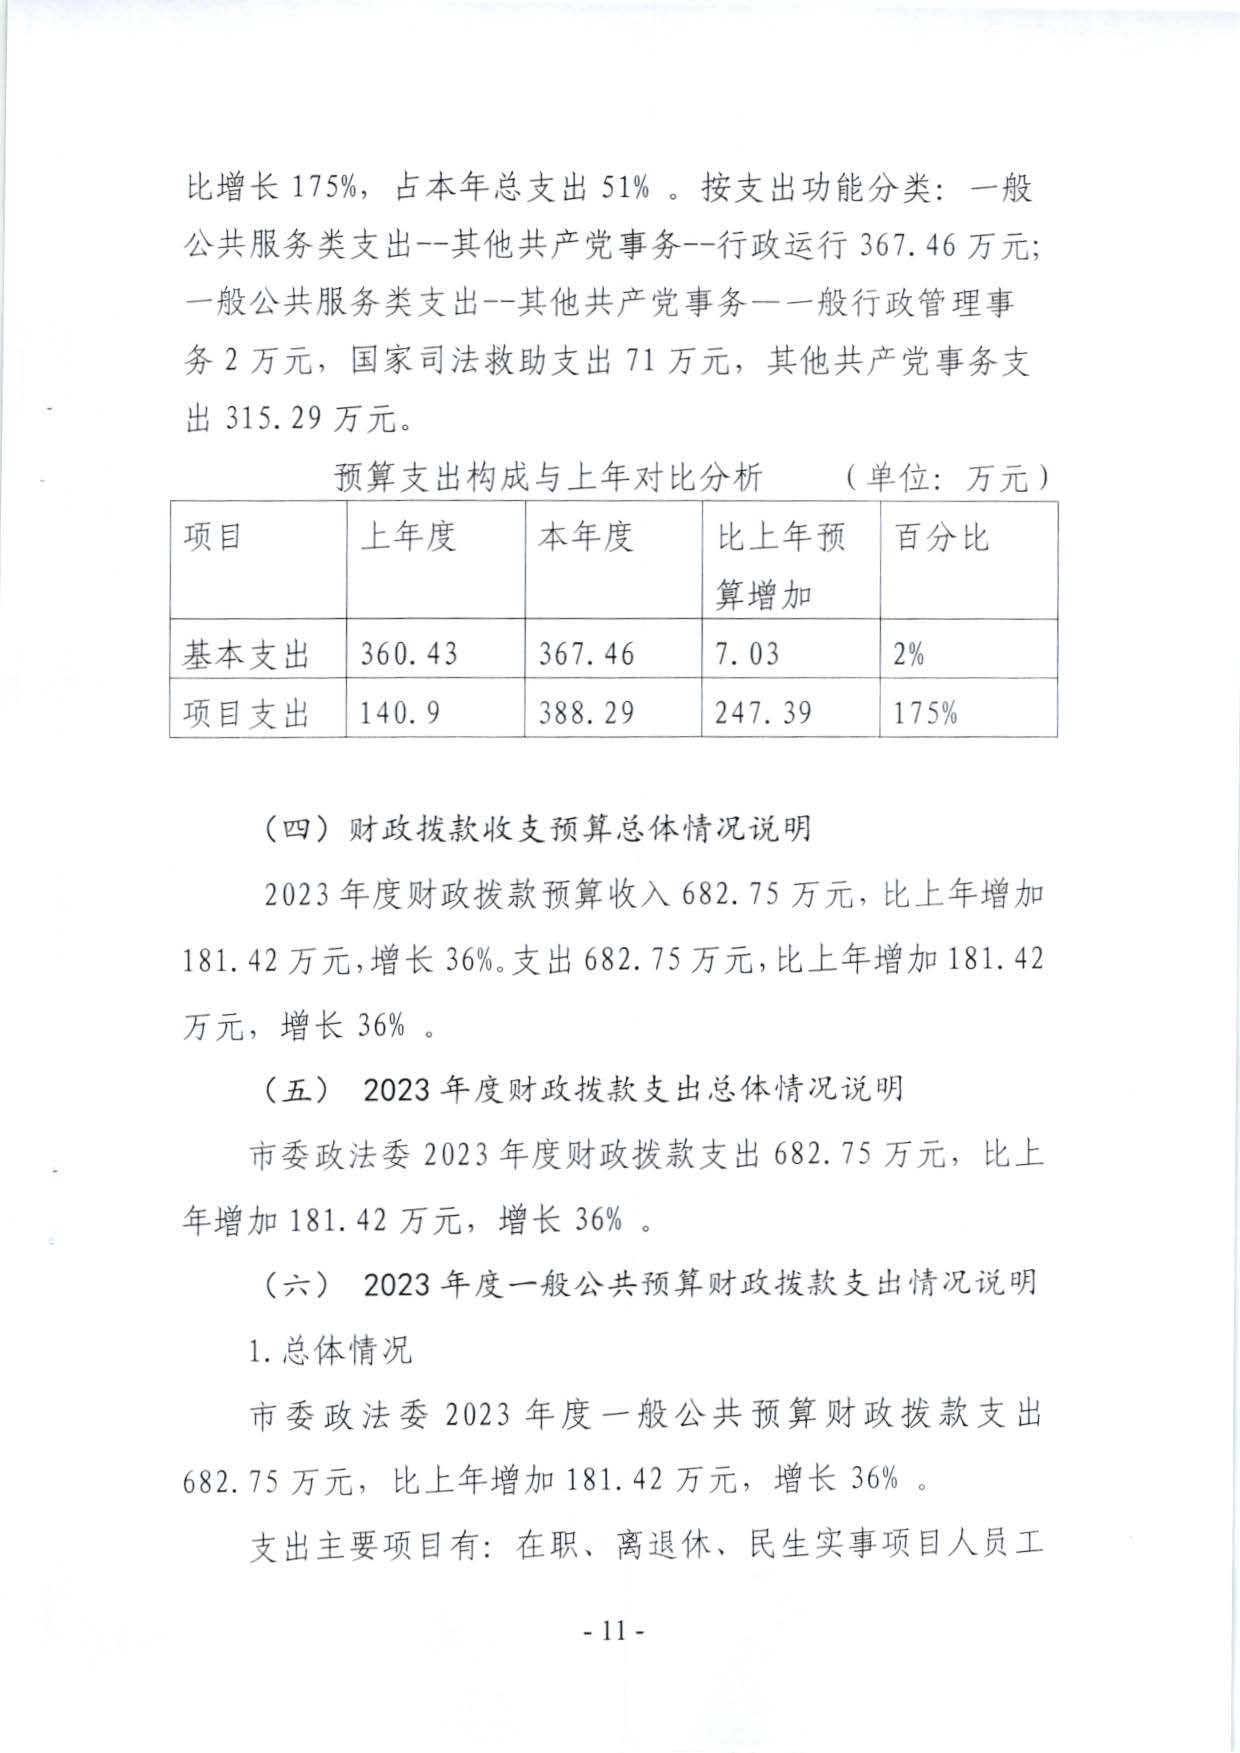 嘉峪关市委政法委2023年预算公开情况说明(1)_页面_11